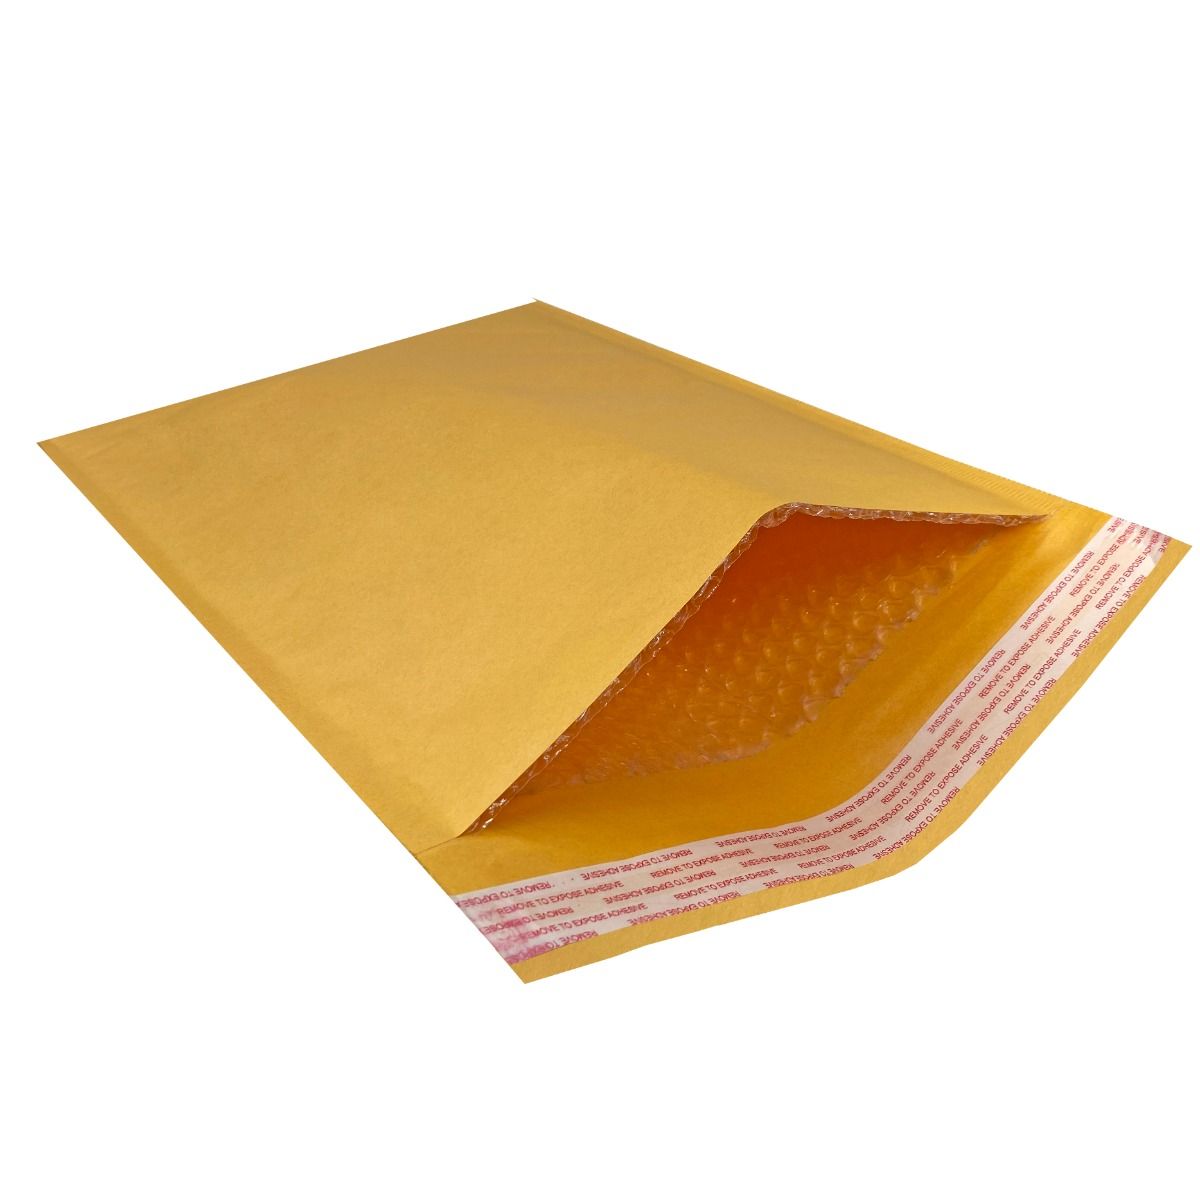 BUBBLE WRAP® Brand Paper Bubble Mailer